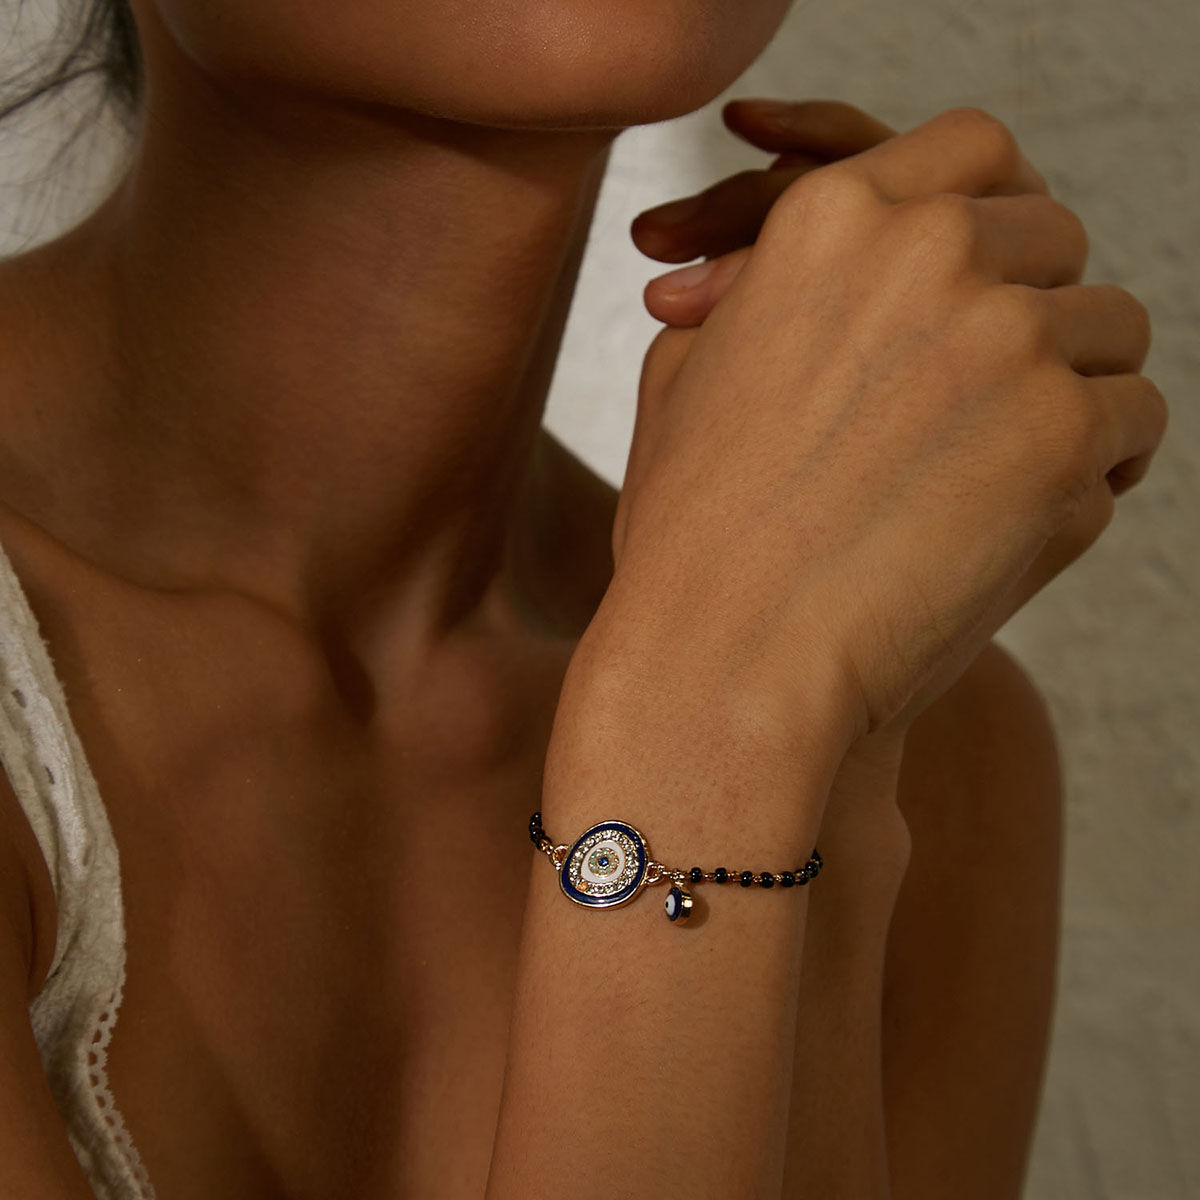 925 Sterling Silver Evil Eye Mangalsutra Bracelet Adjustable size for girls  | eBay